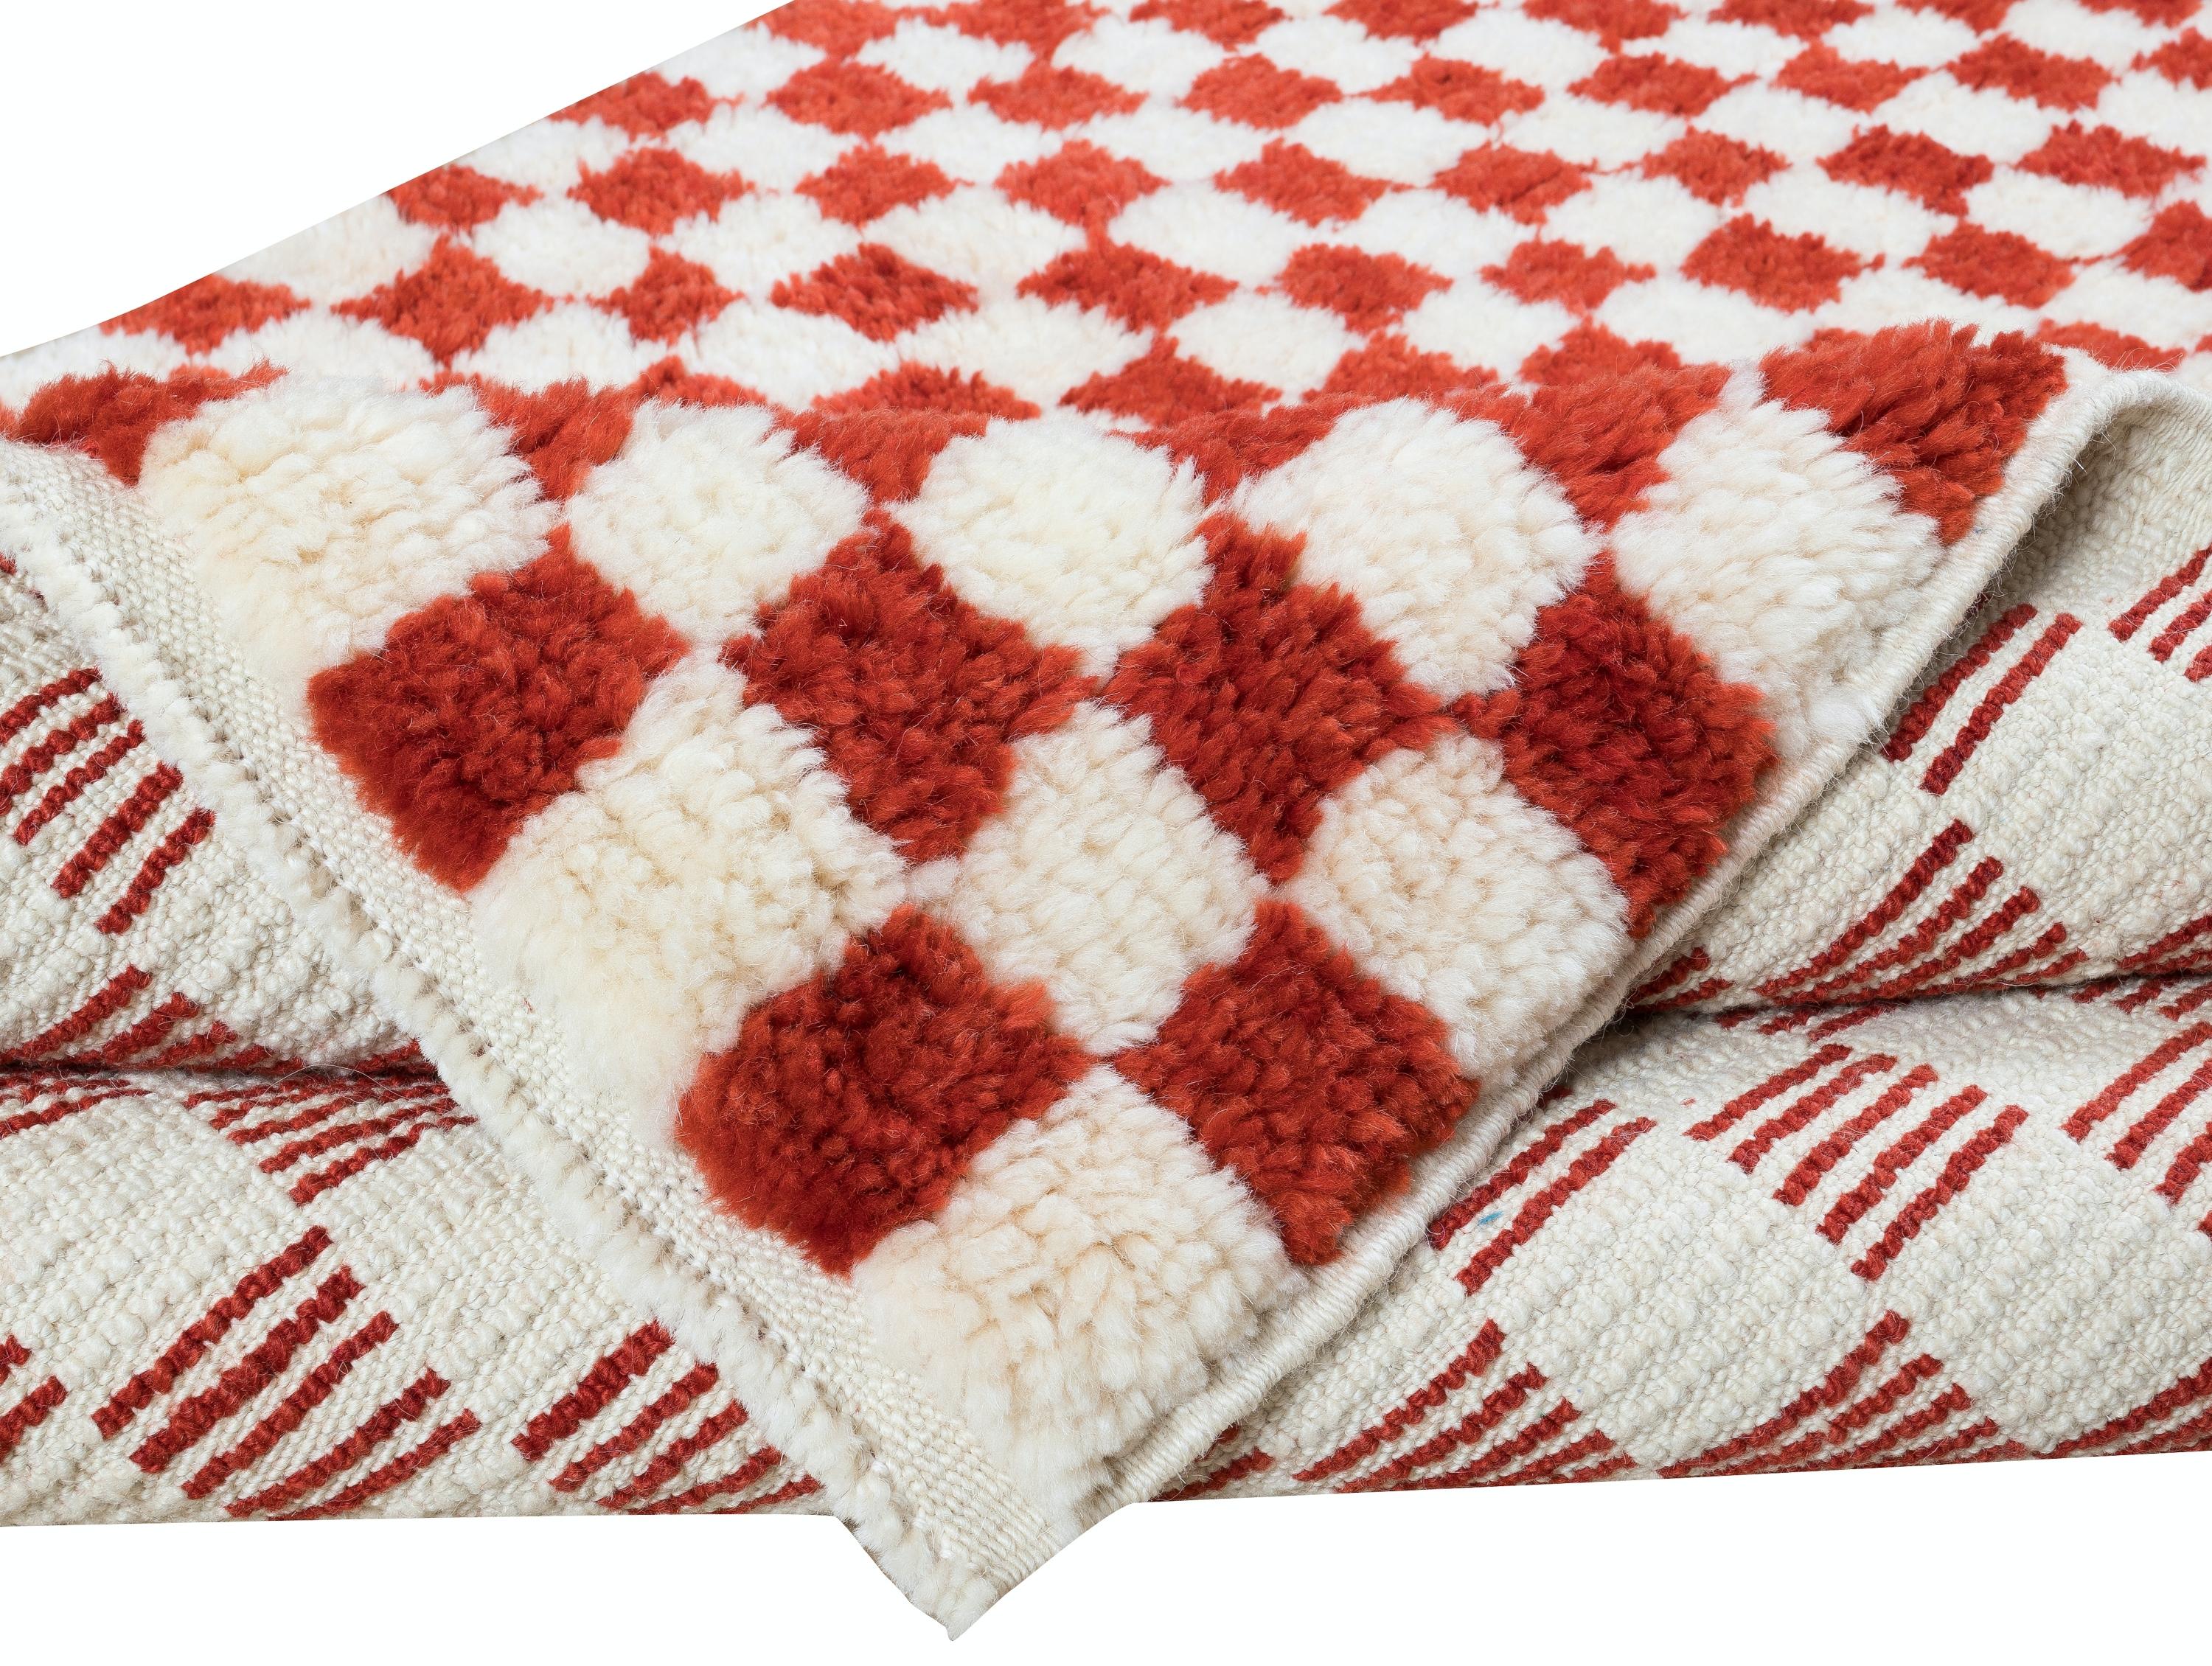 Ein maßgeschneiderter, handgefertigter Tulu-Teppich aus 100% handgesponnener Wolle von feinster Qualität. Es hat ein einfaches Karomuster in Creme und Rot. Maße: 4 x 6

Der Teppich kann in jedem gewünschten Design, jeder Größe, Farbkombination und